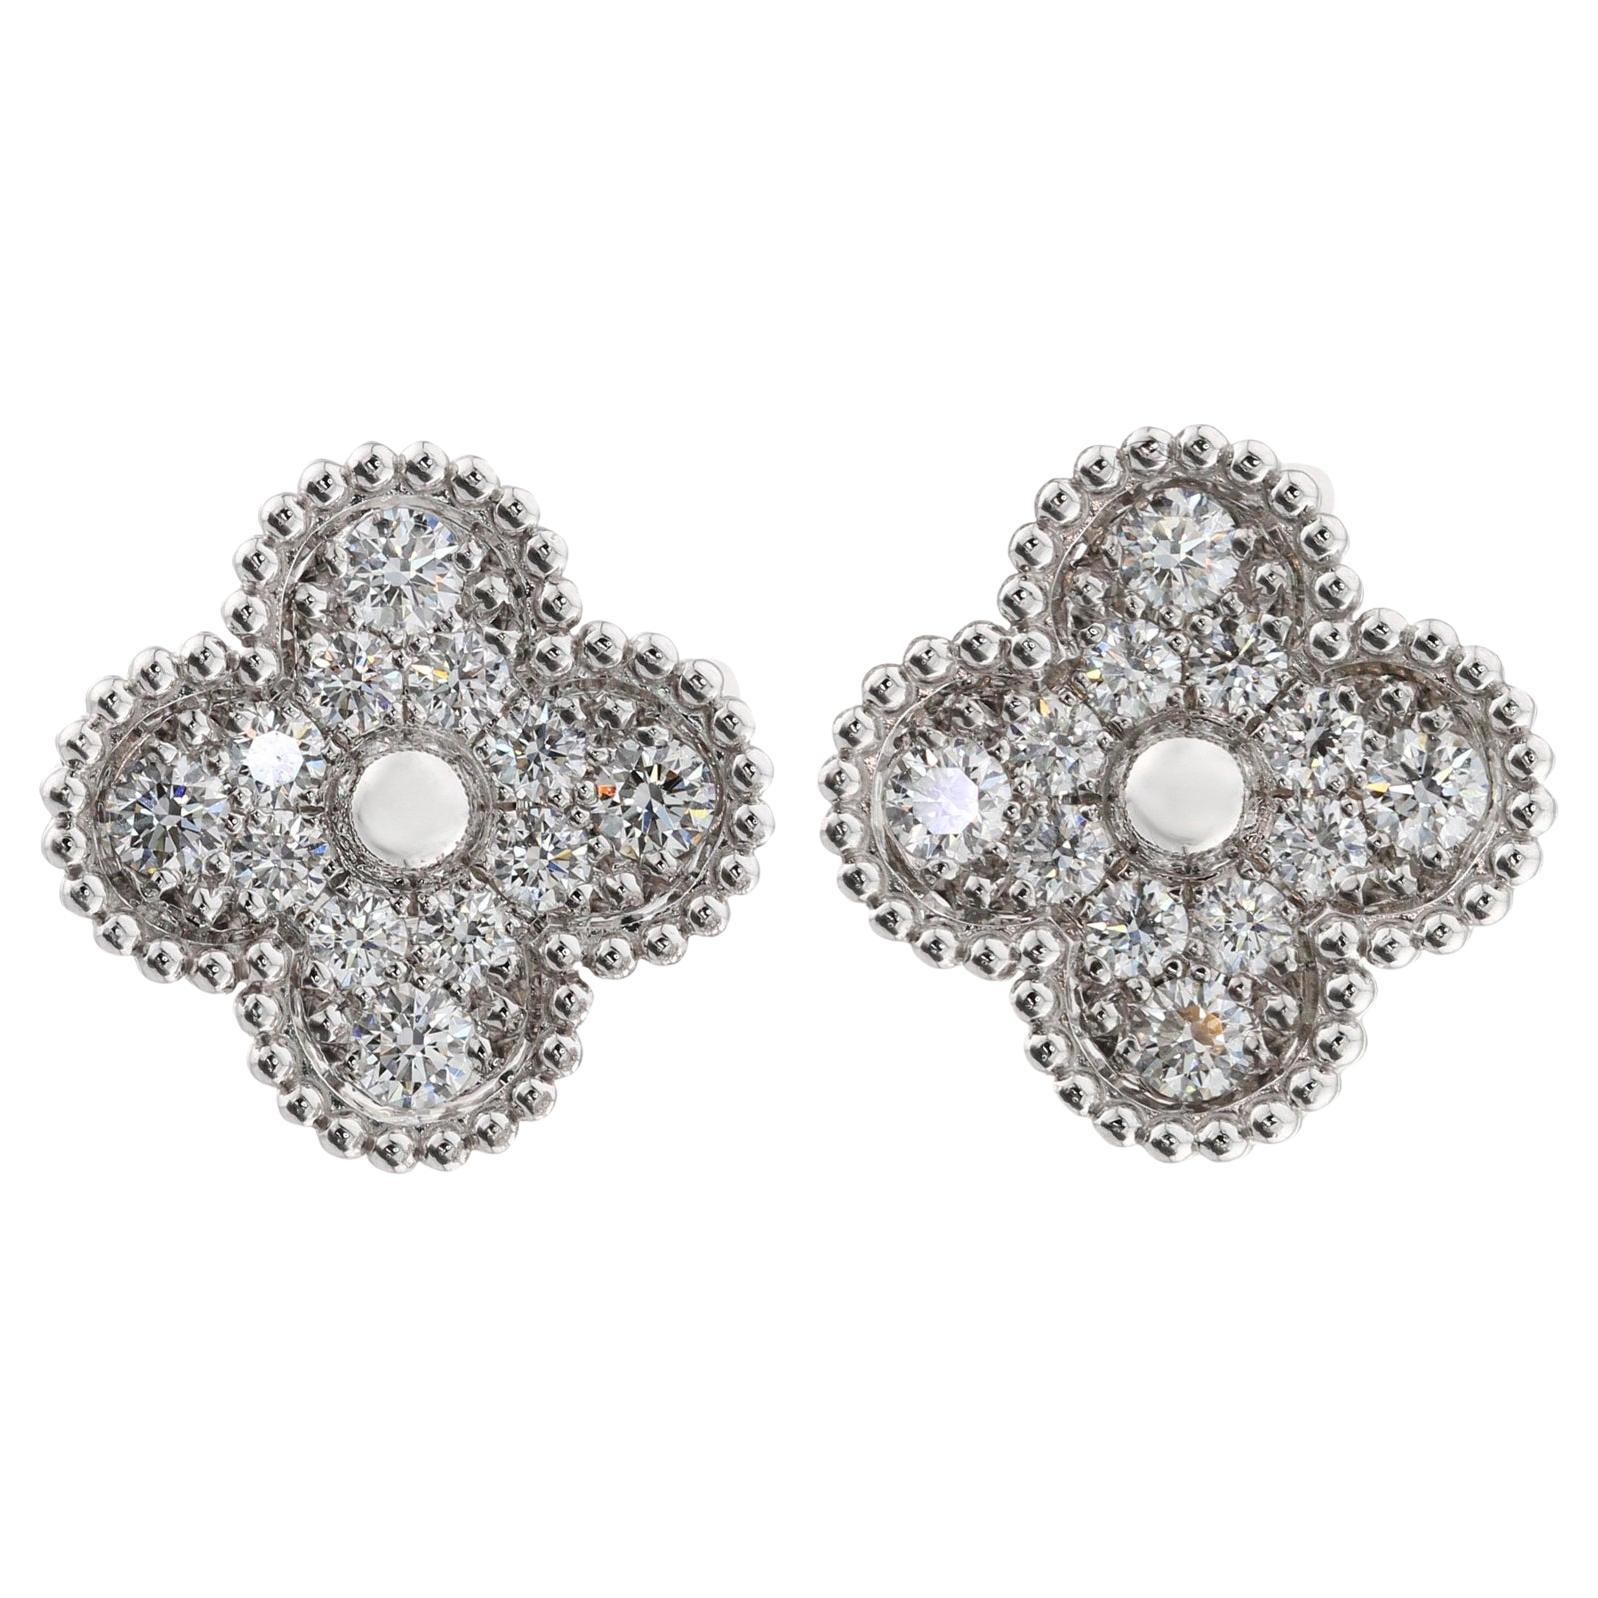 VAN CLEEF & ARPELS Vintage Alhambra Diamond White Gold Earrings Box Papers 